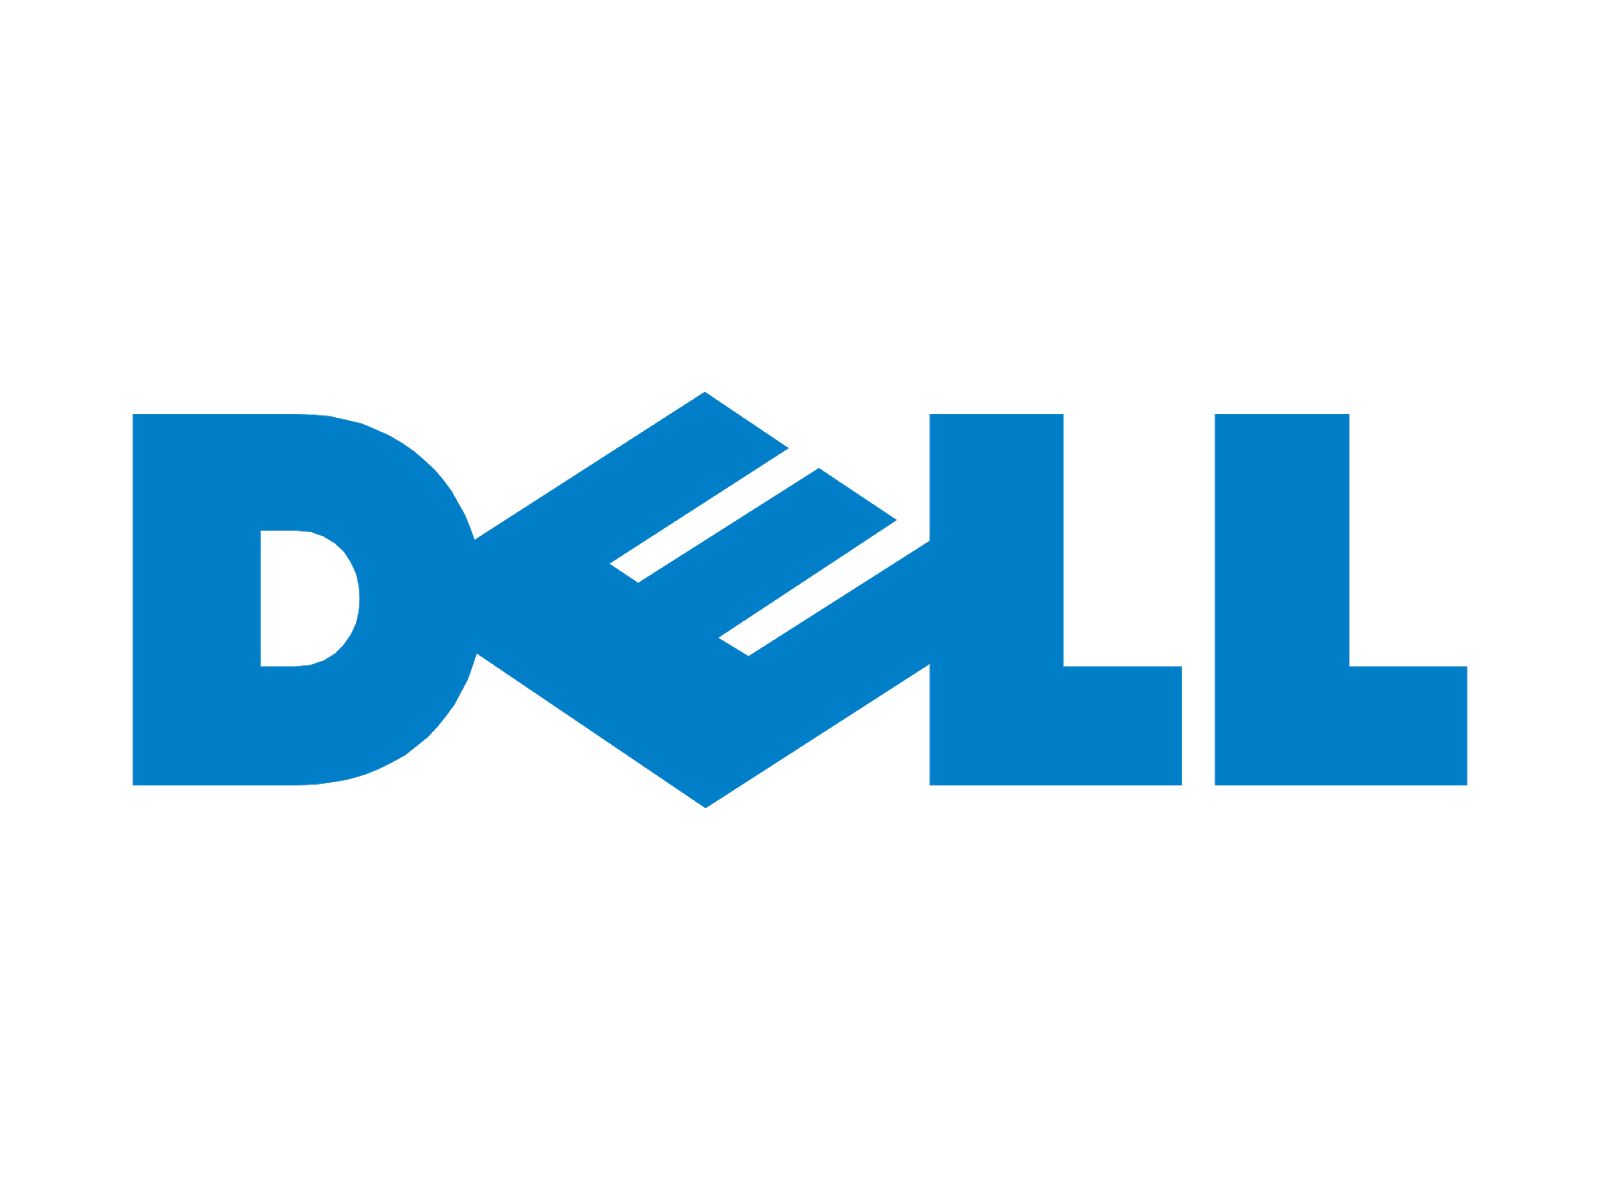 Dell logo 120x120